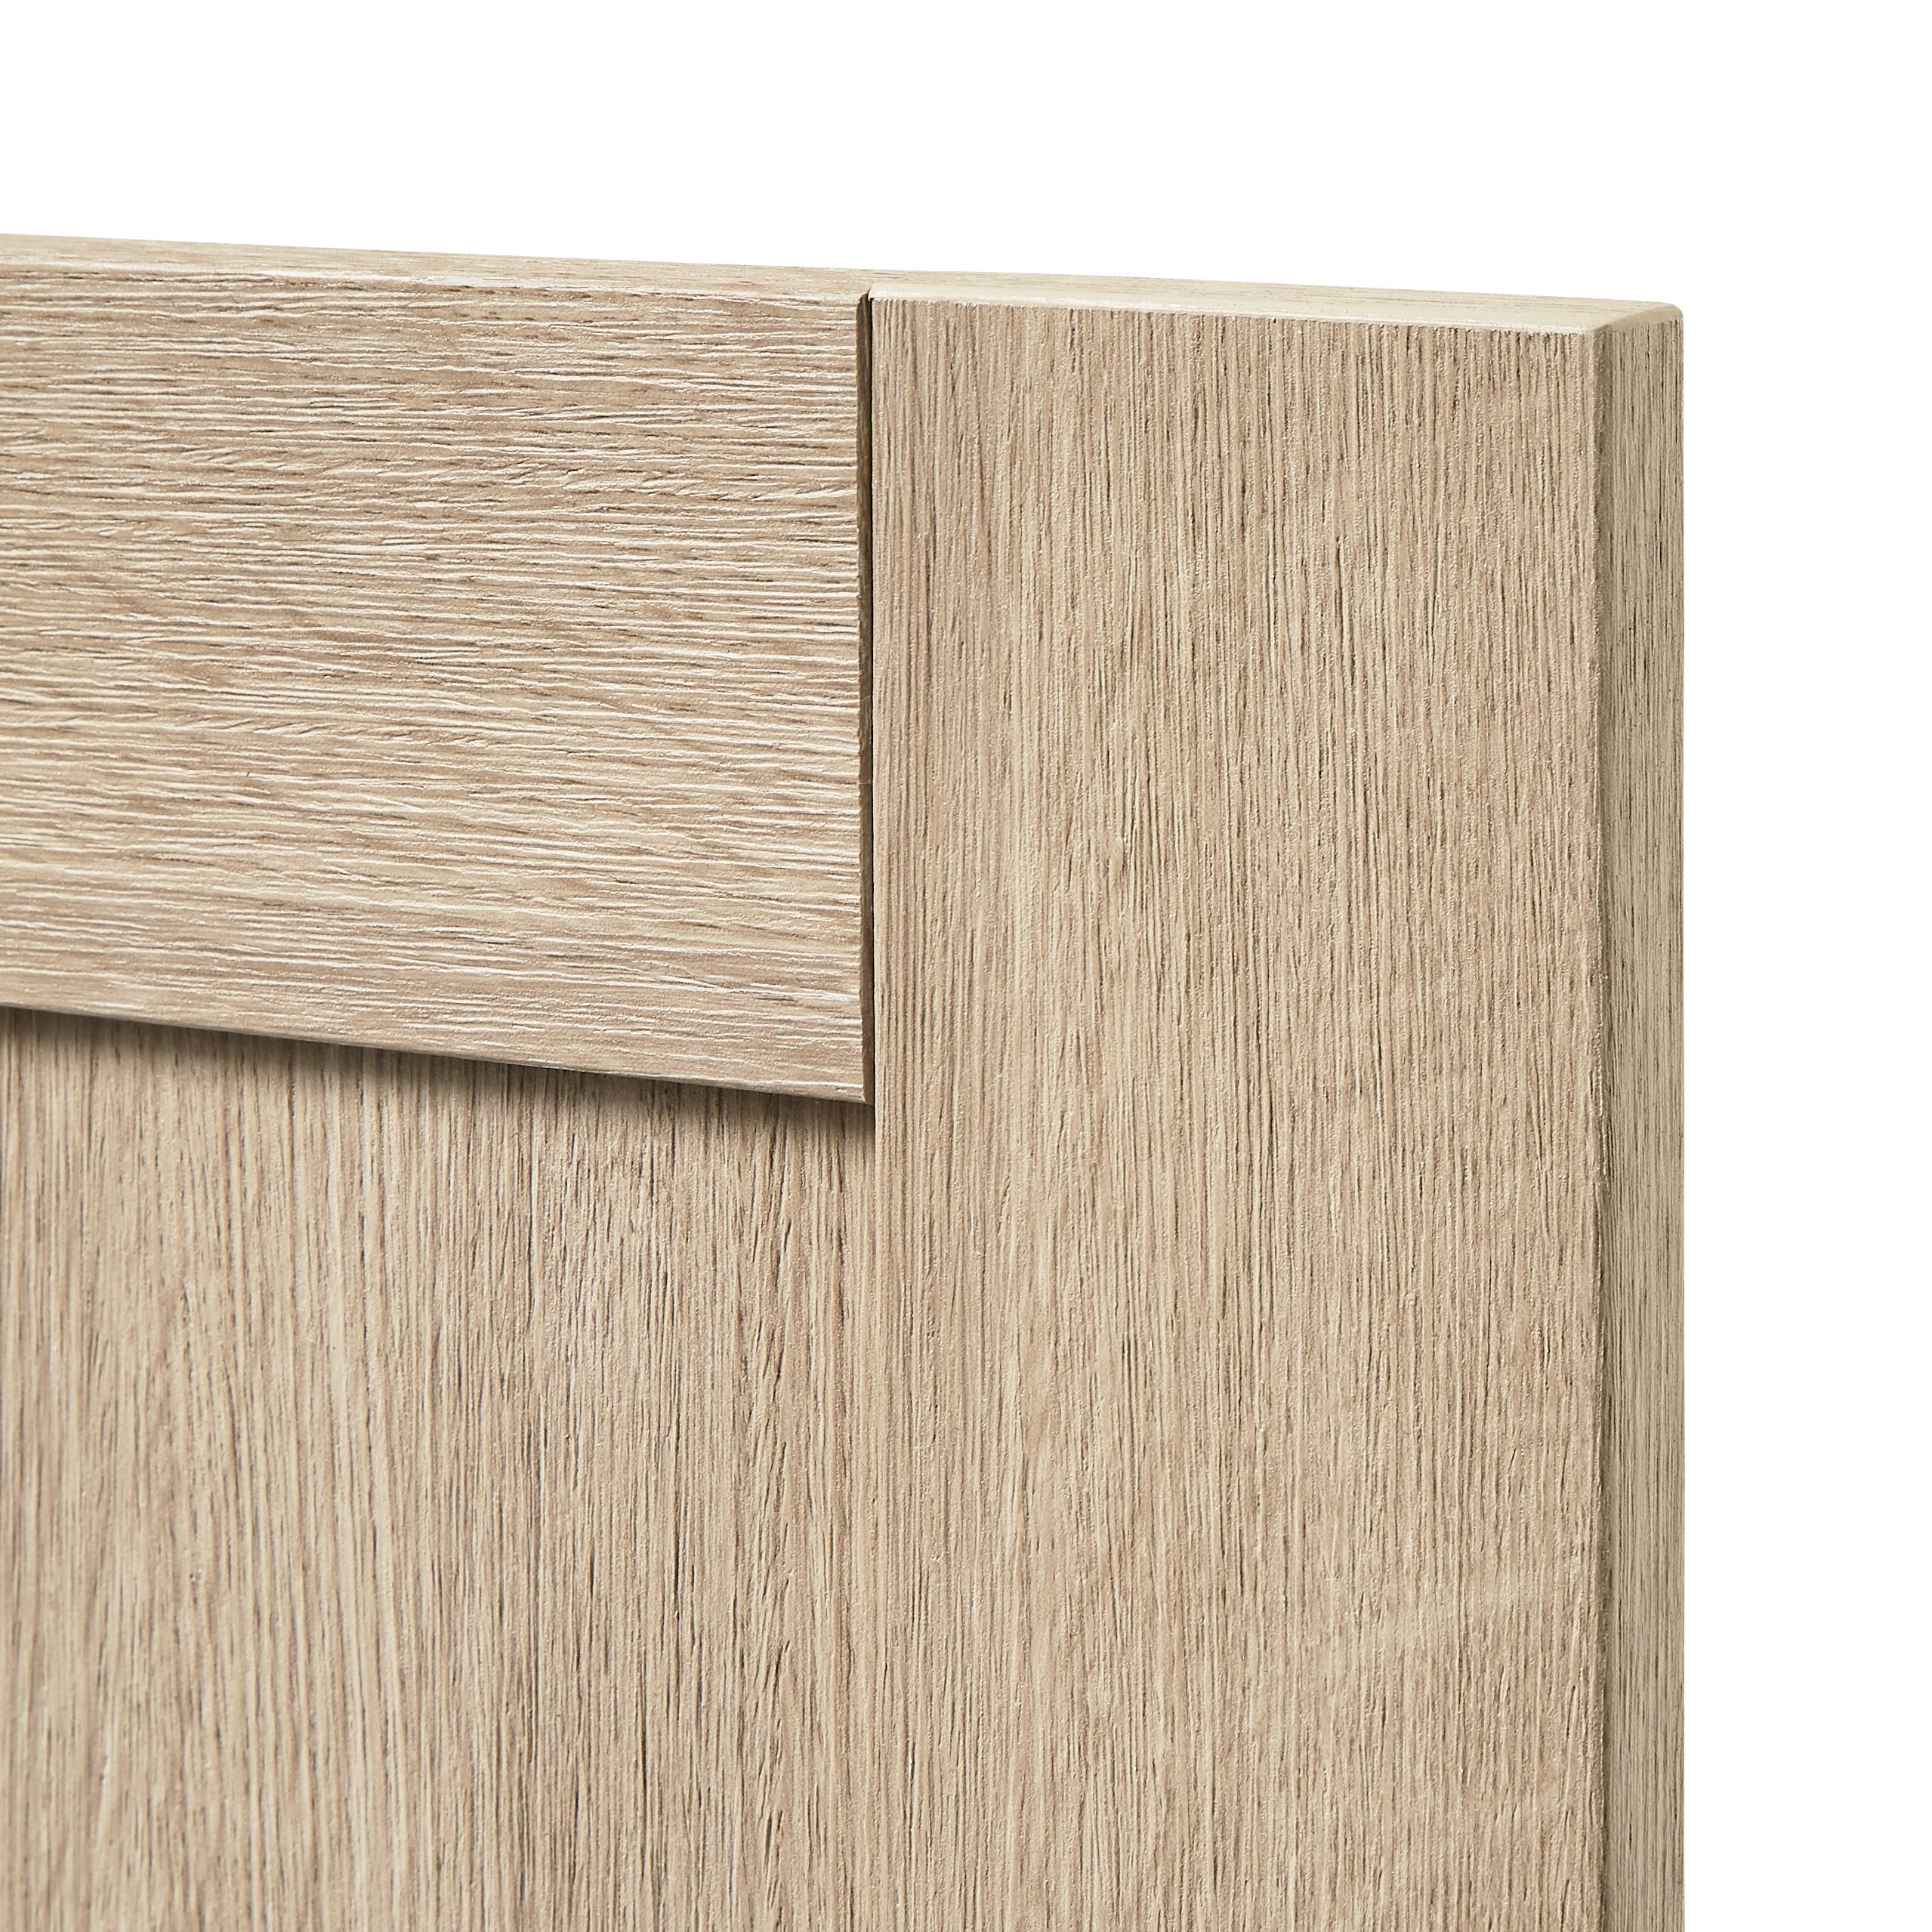 GoodHome Alpinia Oak effect shaker Drawer front, bridging door & bi fold door, (W)500mm (H)356mm (T)18mm